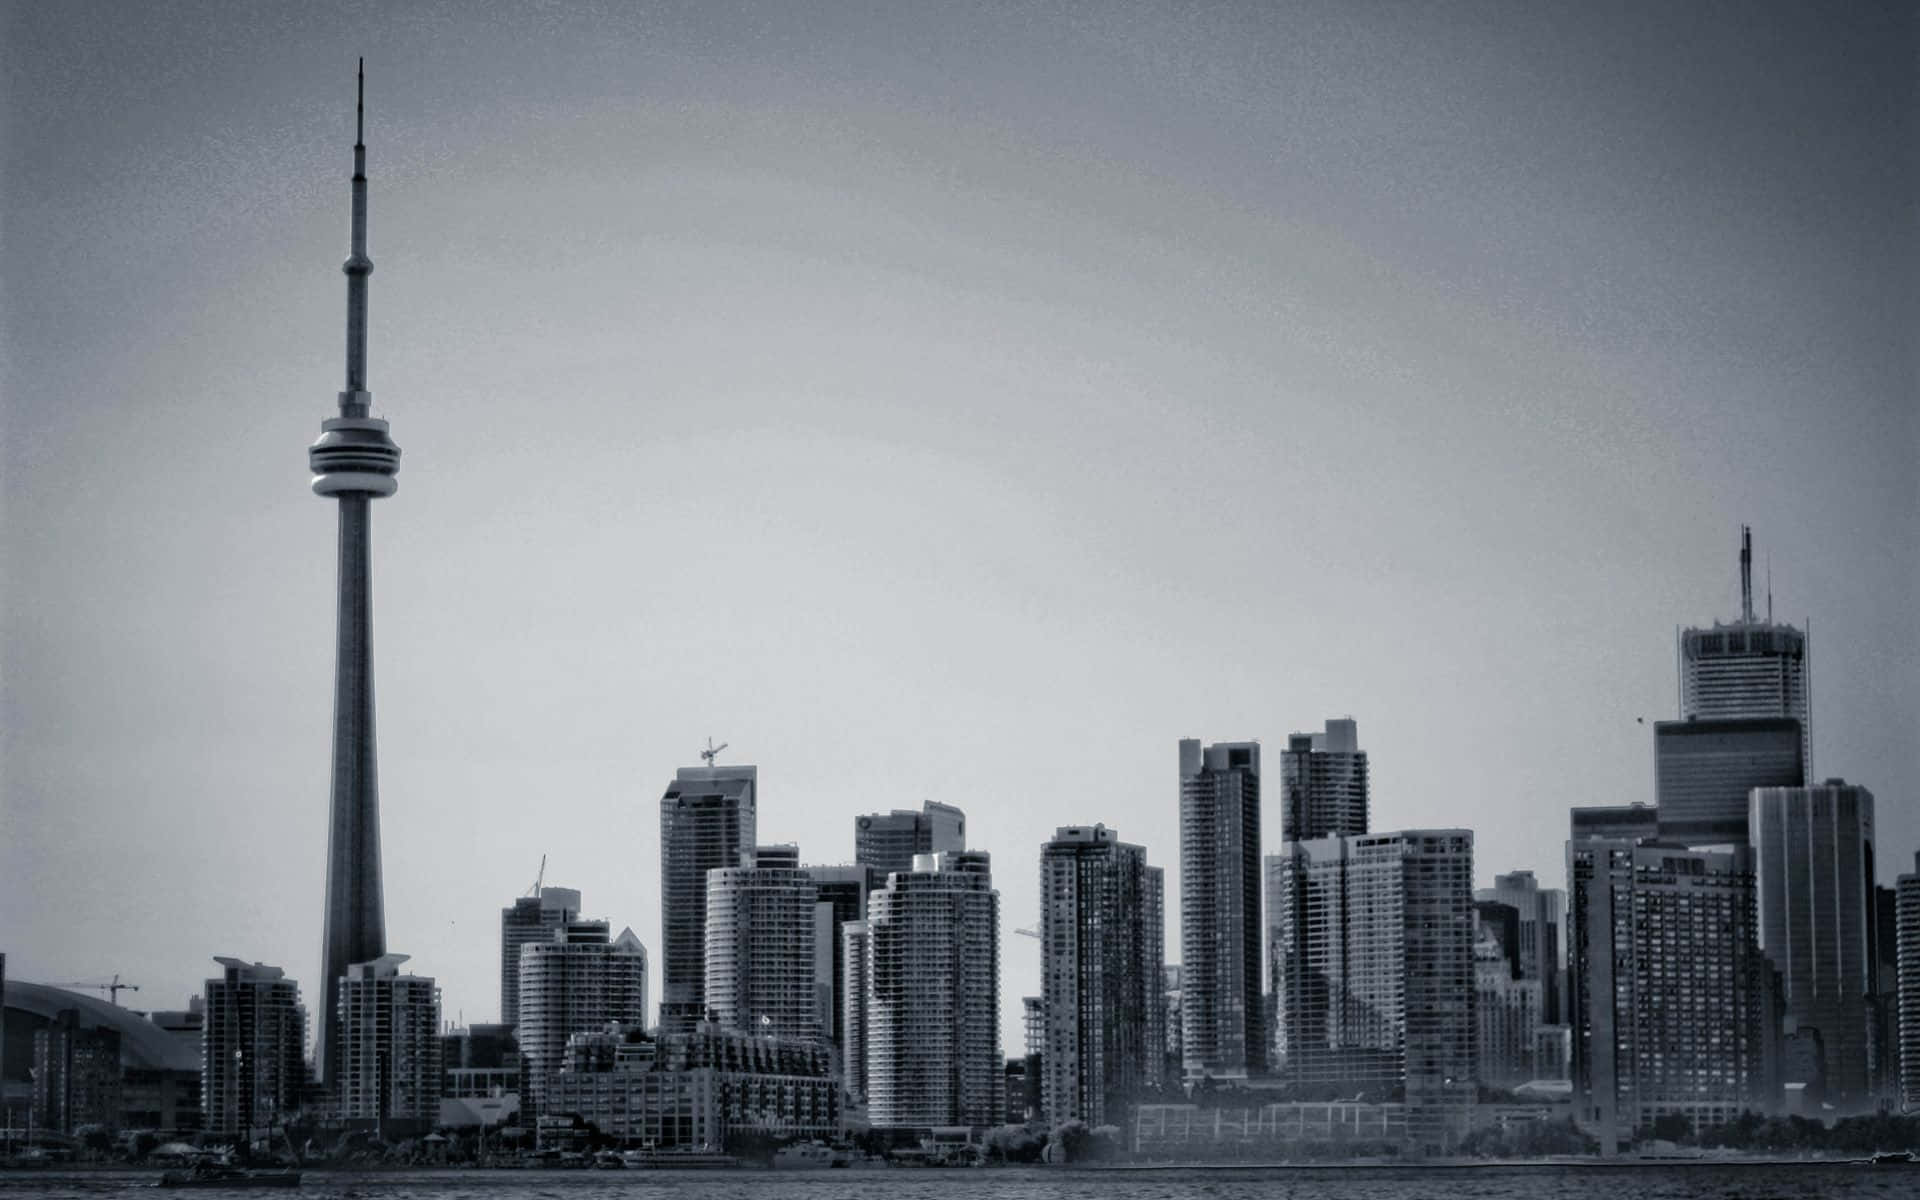 Utsiktenfrån Ovan Av En Av Världens Mest Dynamiska Städer - Toronto, Kanada.